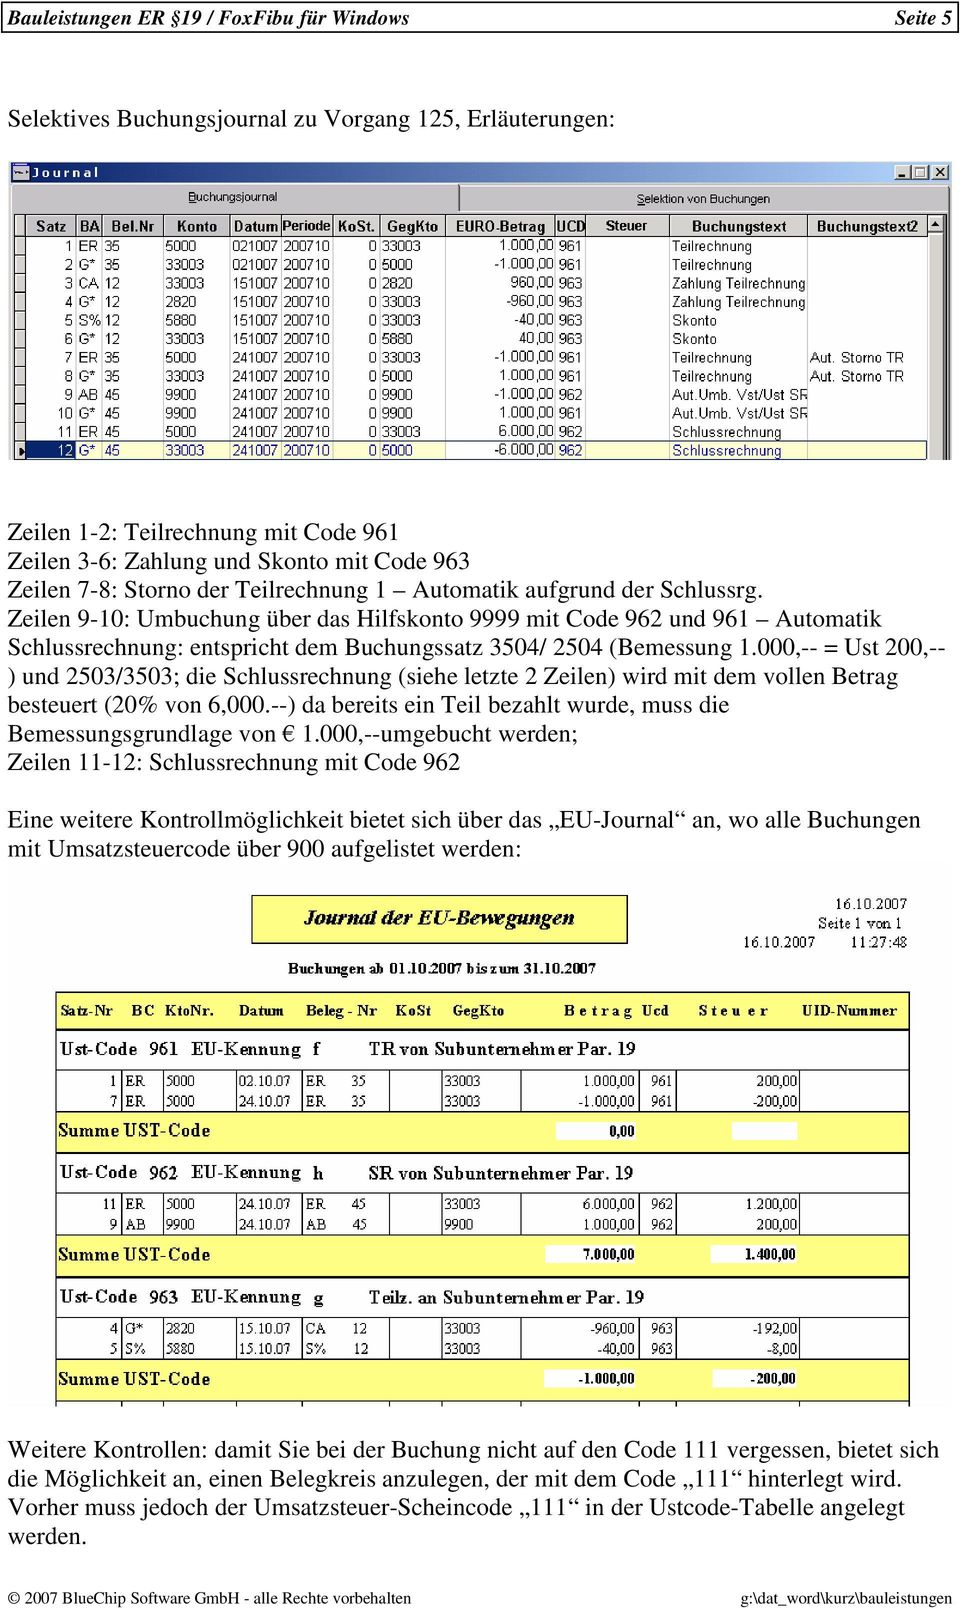 Zeilen 9-10: Umbuchung über das Hilfskonto 9999 mit Code 962 und 961 Automatik Schlussrechnung: entspricht dem Buchungssatz 3504/ 2504 (Bemessung 1.